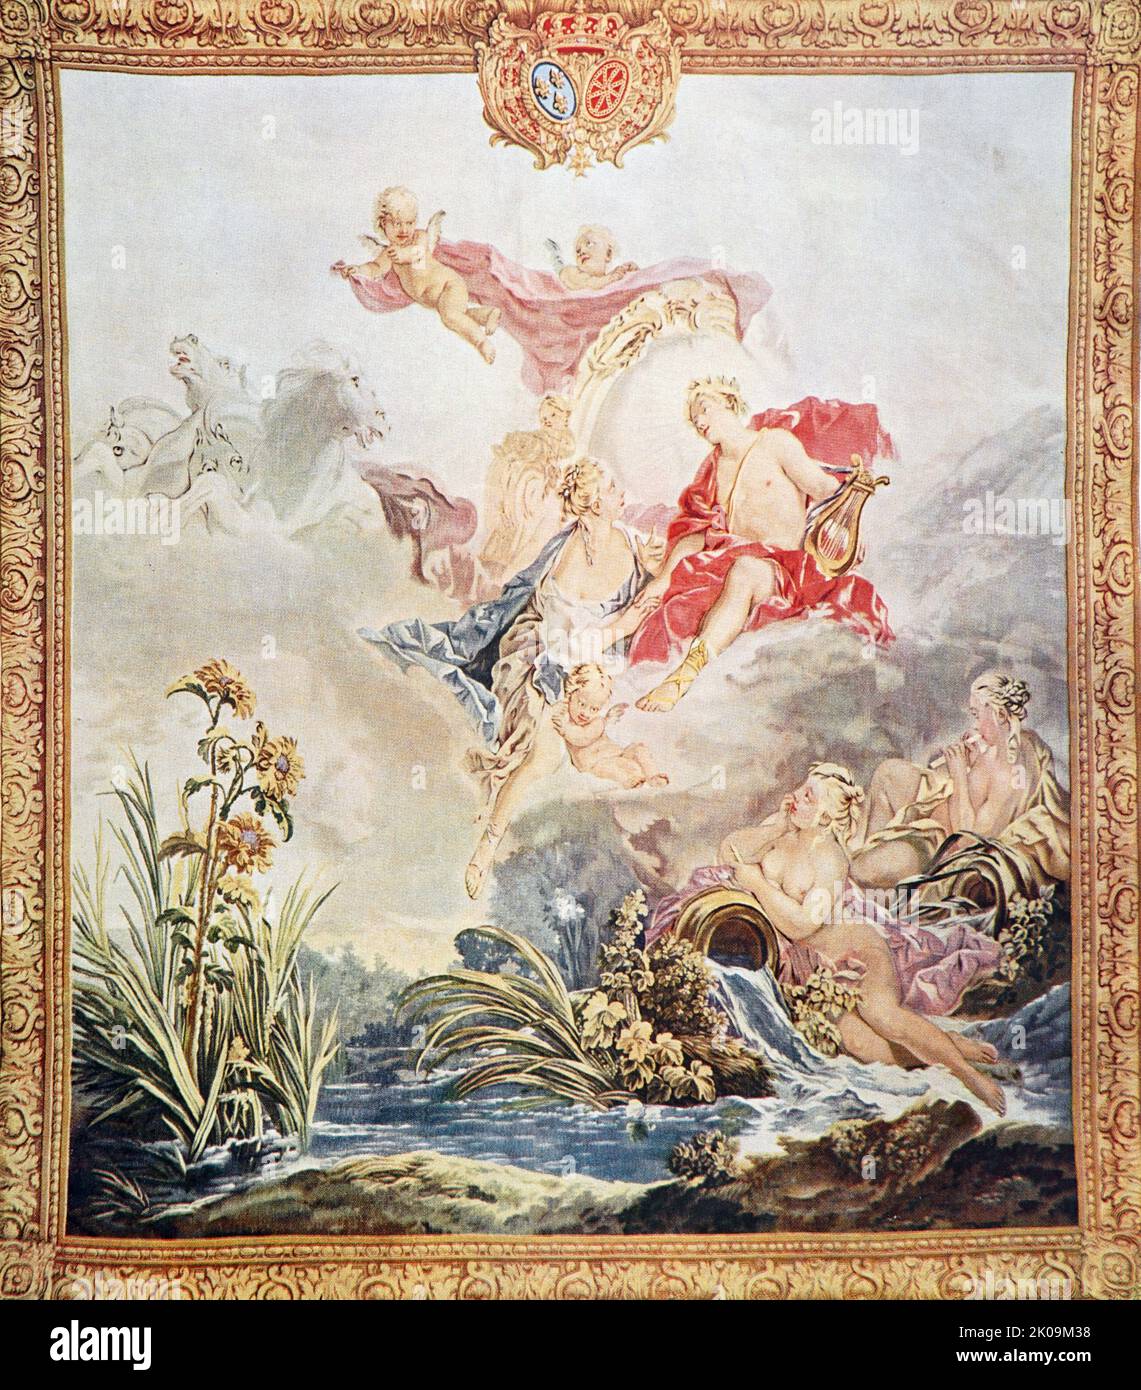 Wandteppich Royal Beauvais nach einem Entwurf von Francois Boucher. Francois Boucher (29. September 1703 - 30. Mai 1770) war ein französischer Maler, Zeichner und Radierer, der im Rokoko-Stil arbeitete. Stockfoto